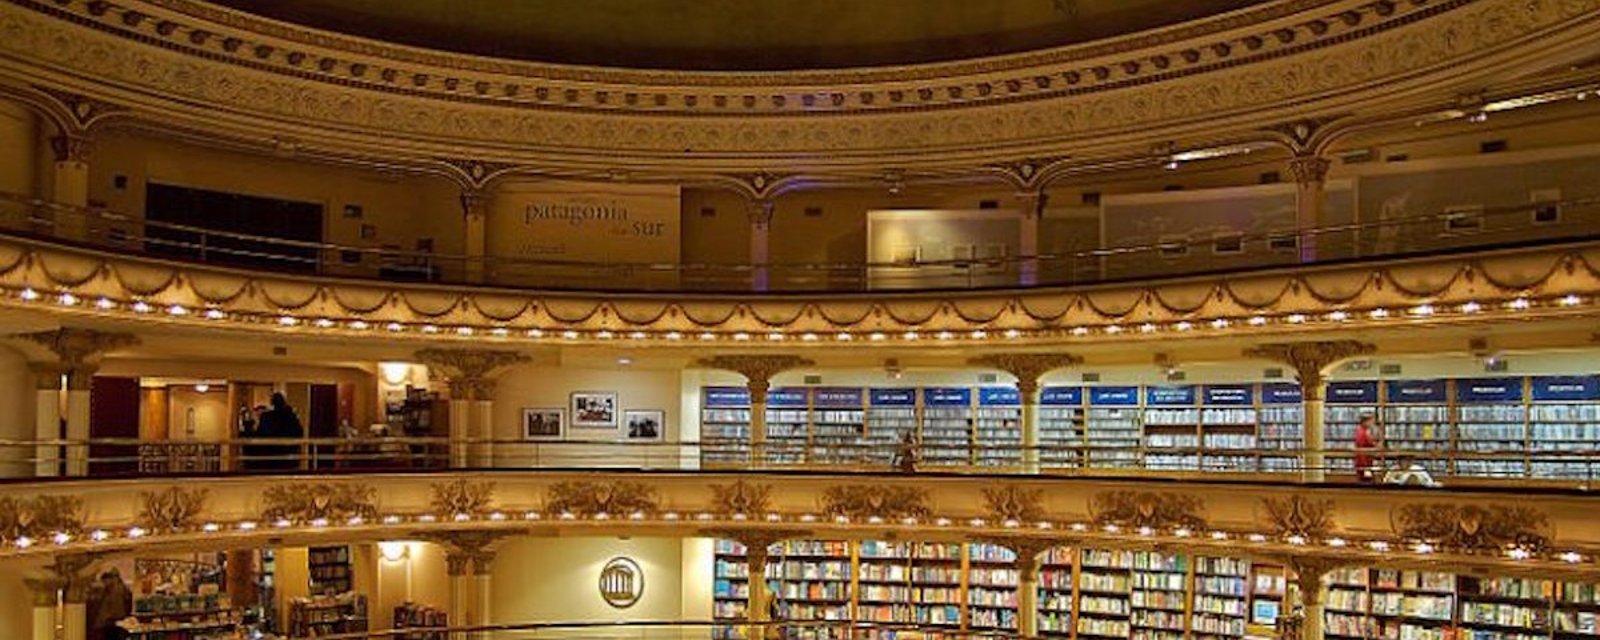 Ce théâtre centenaire a été converti en une librairie tout simplement fabuleuse!